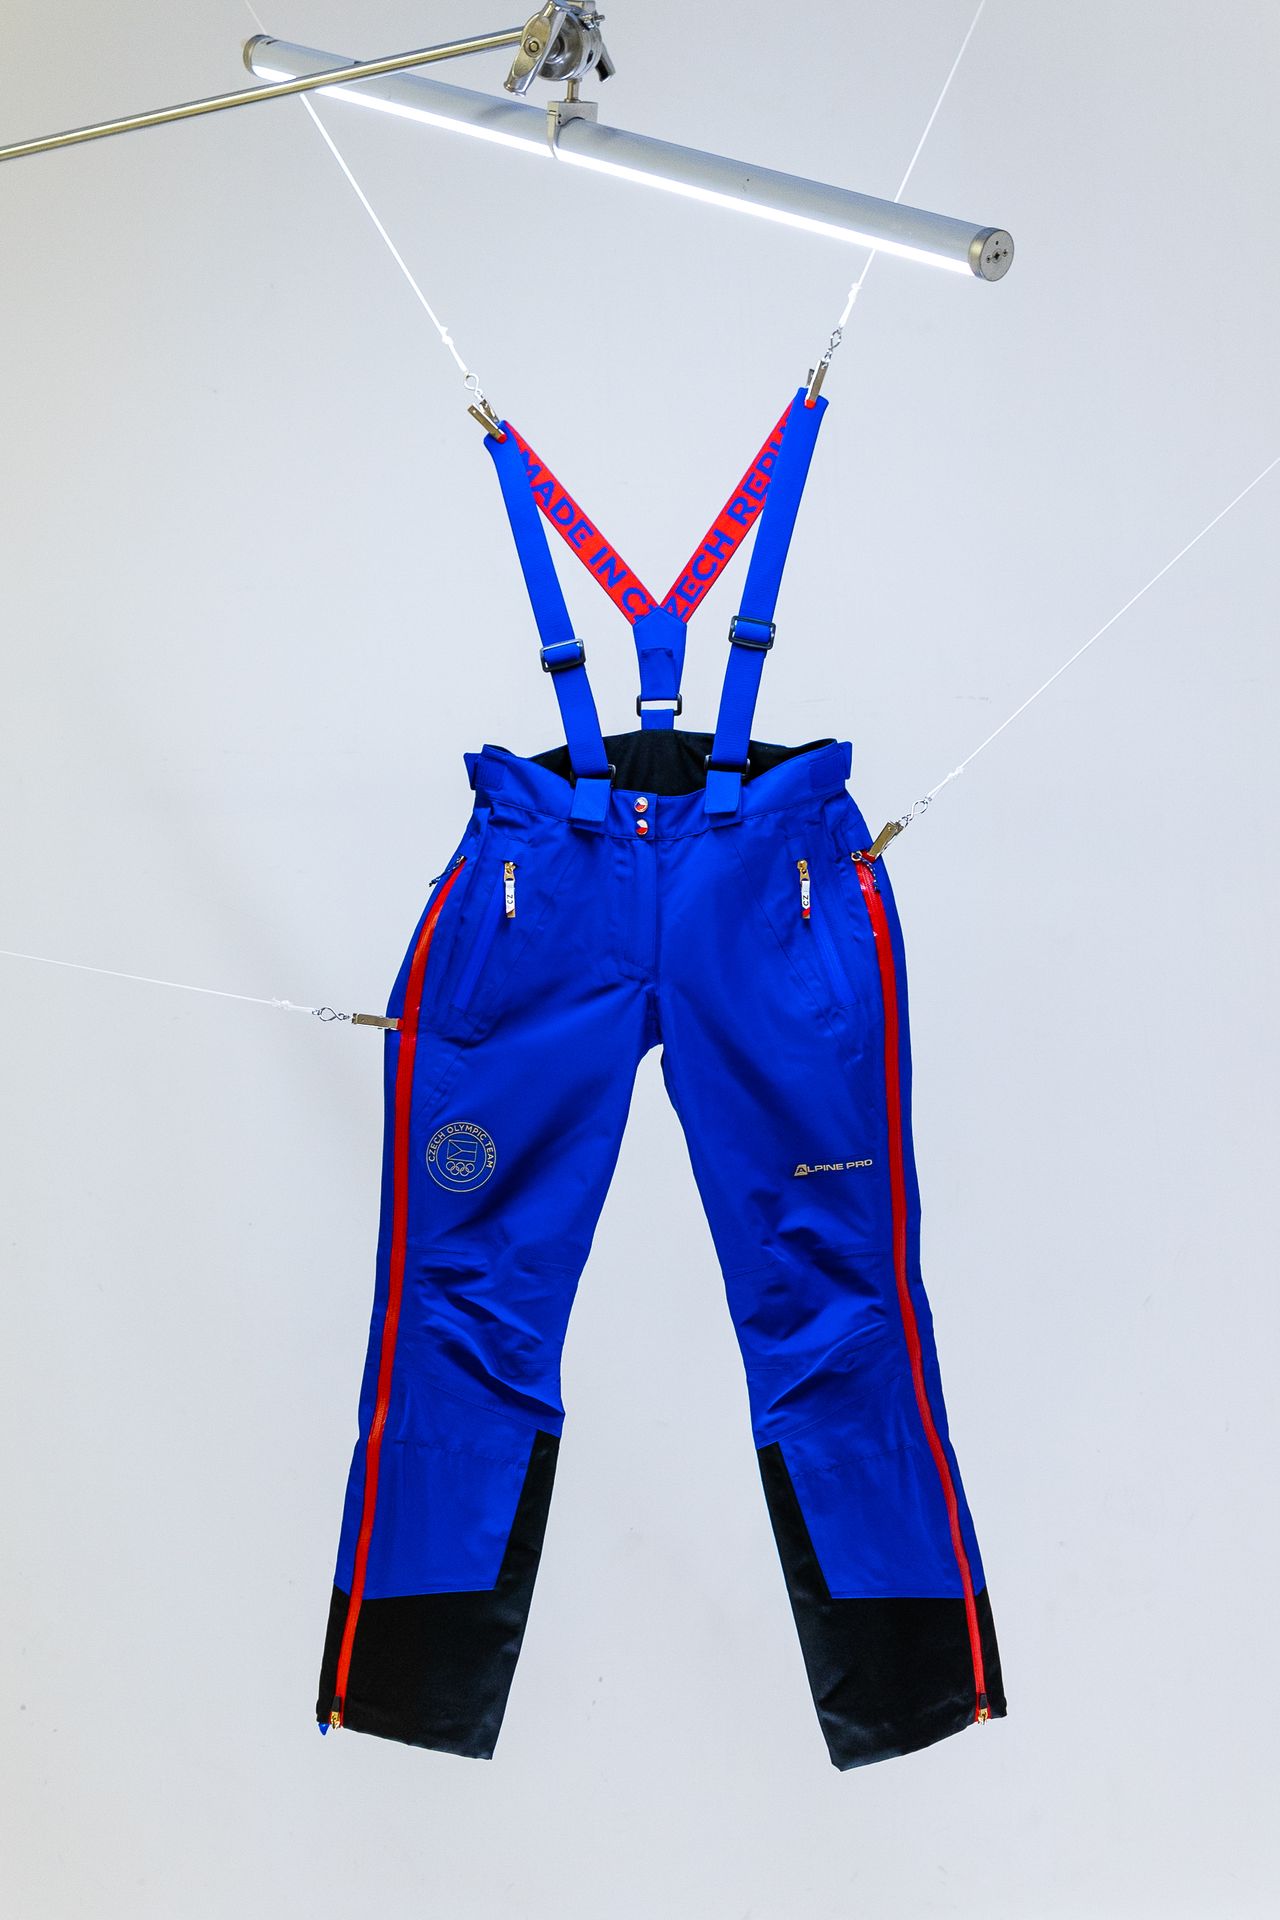 Kalhoty z české kolekce pro Zimní olympijské hry v Pekingu 2022 - Olympijská kolekce české výpravy do Pekingu (10/15)